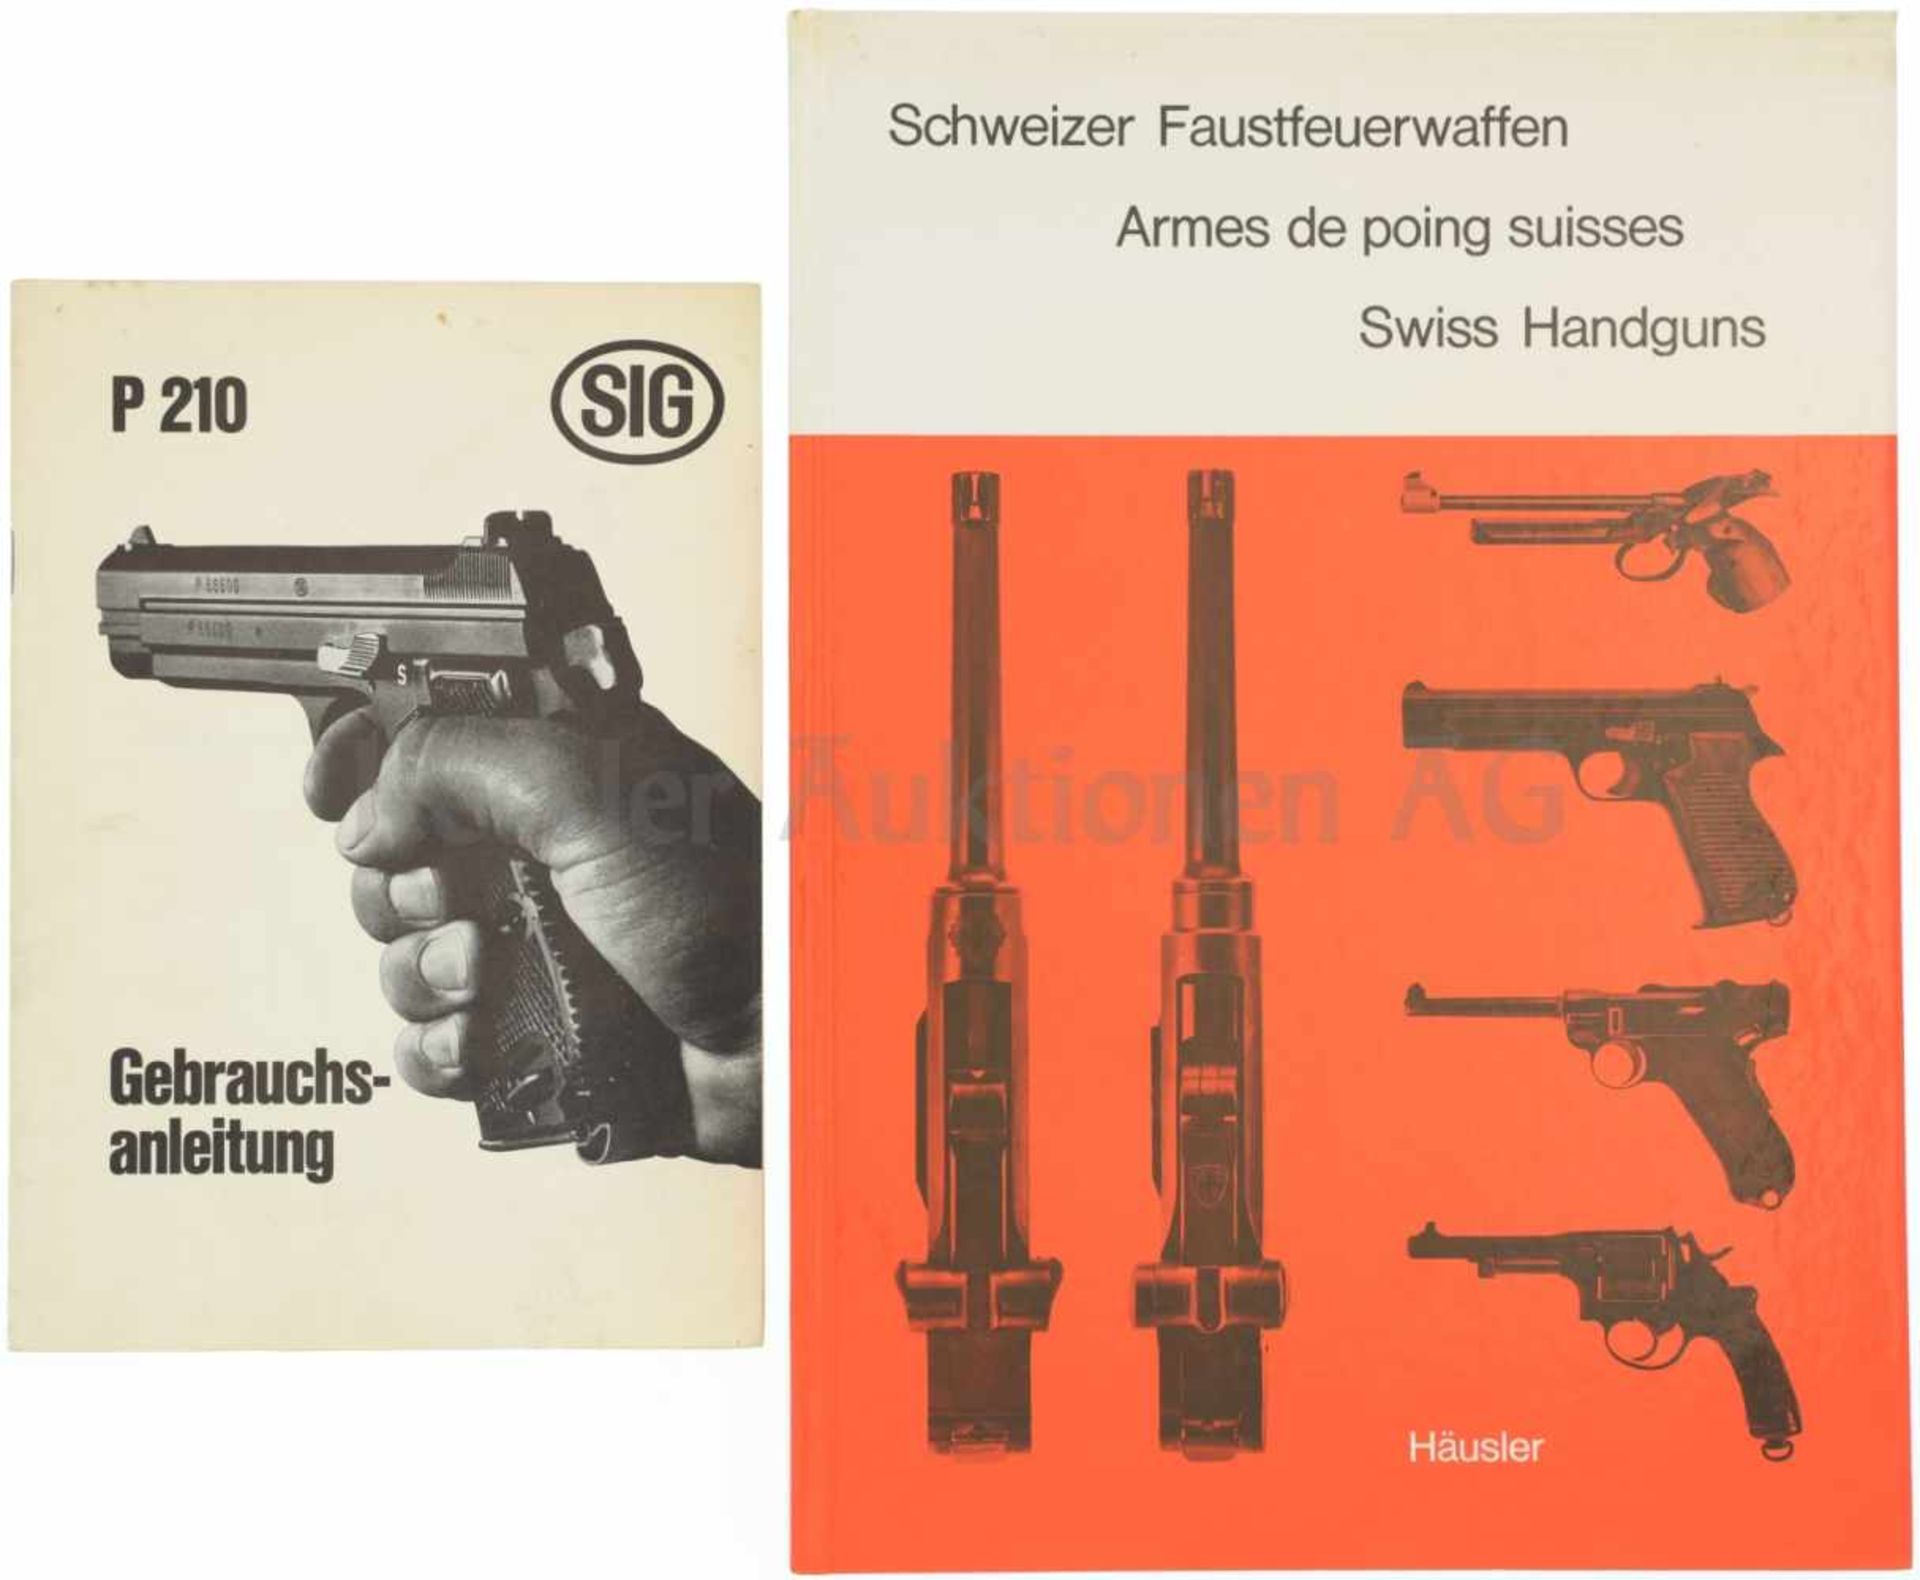 Konvolut von 2 Büchern 1. "SIG P210 Gebrauchsanleitung". 2. "Schweizer Fausfeuerwaffen" von Fritz